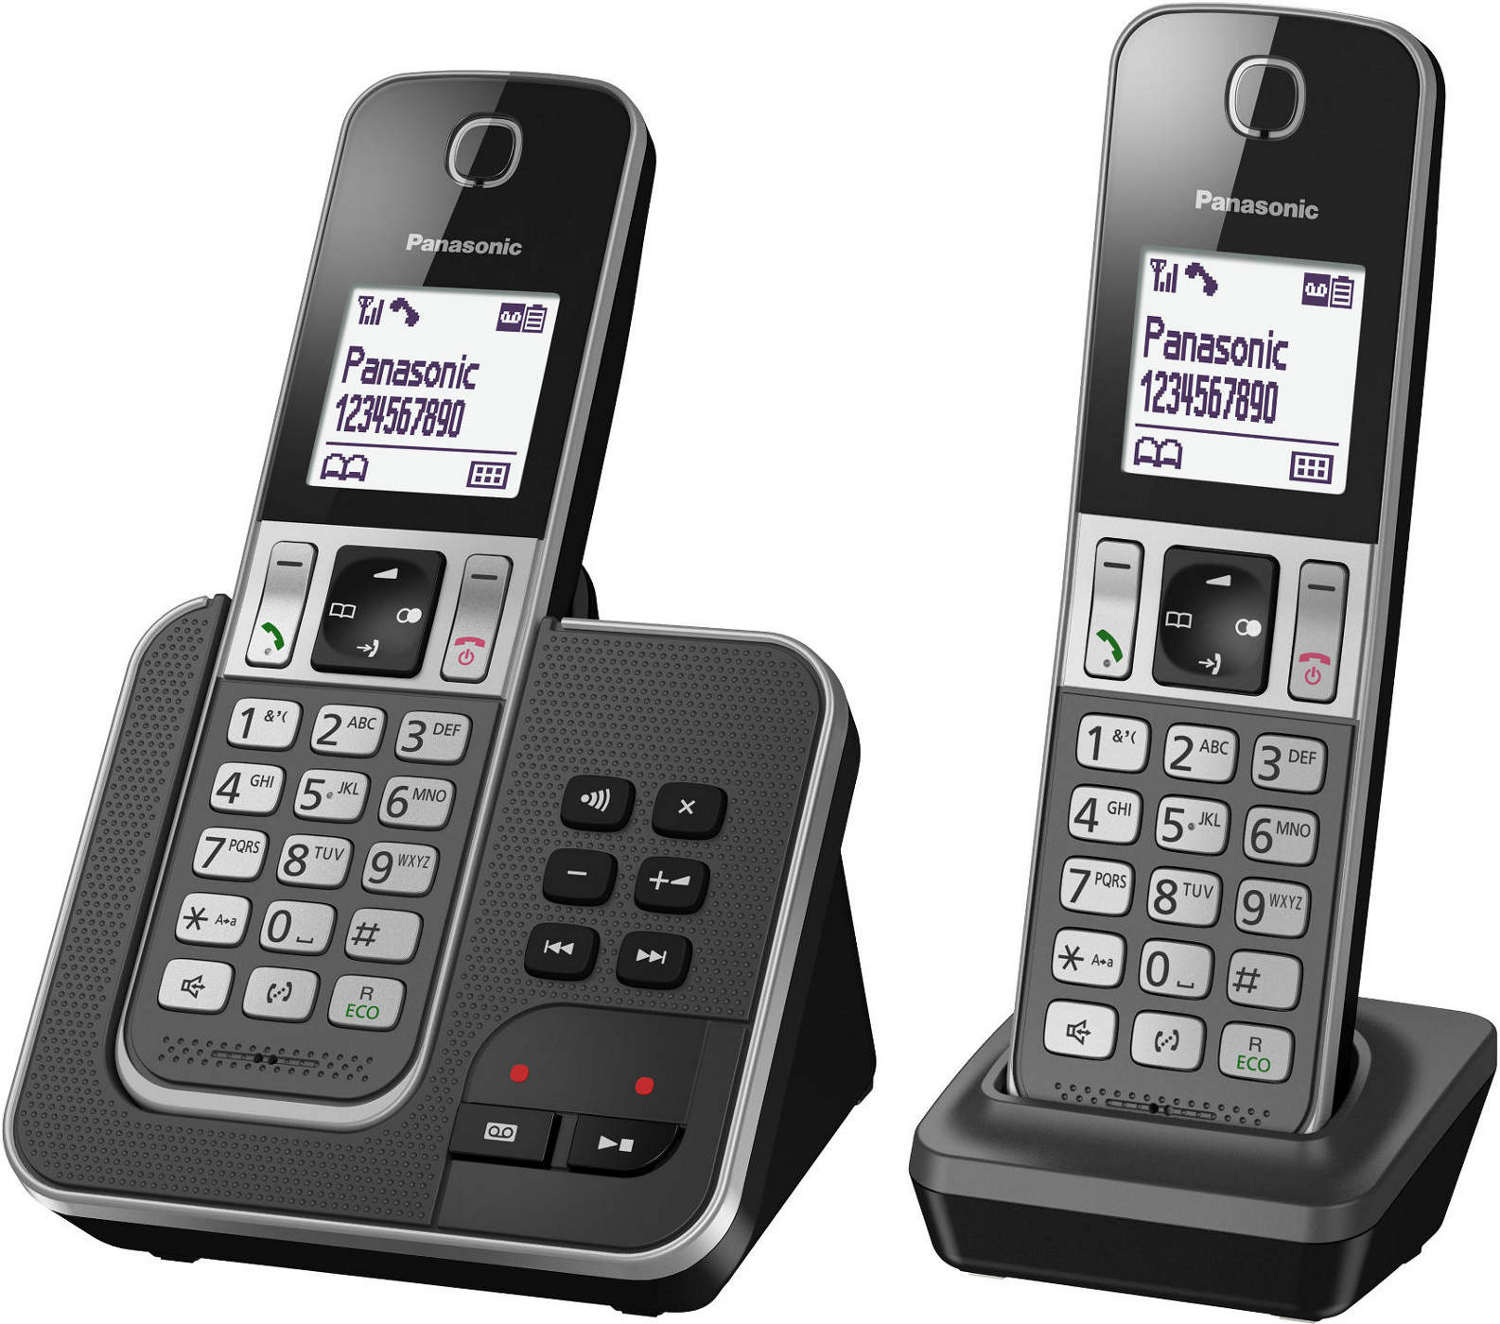 Téléphone Fixe Sans Fil REF D285 DUO - espace technologie e.leclerc